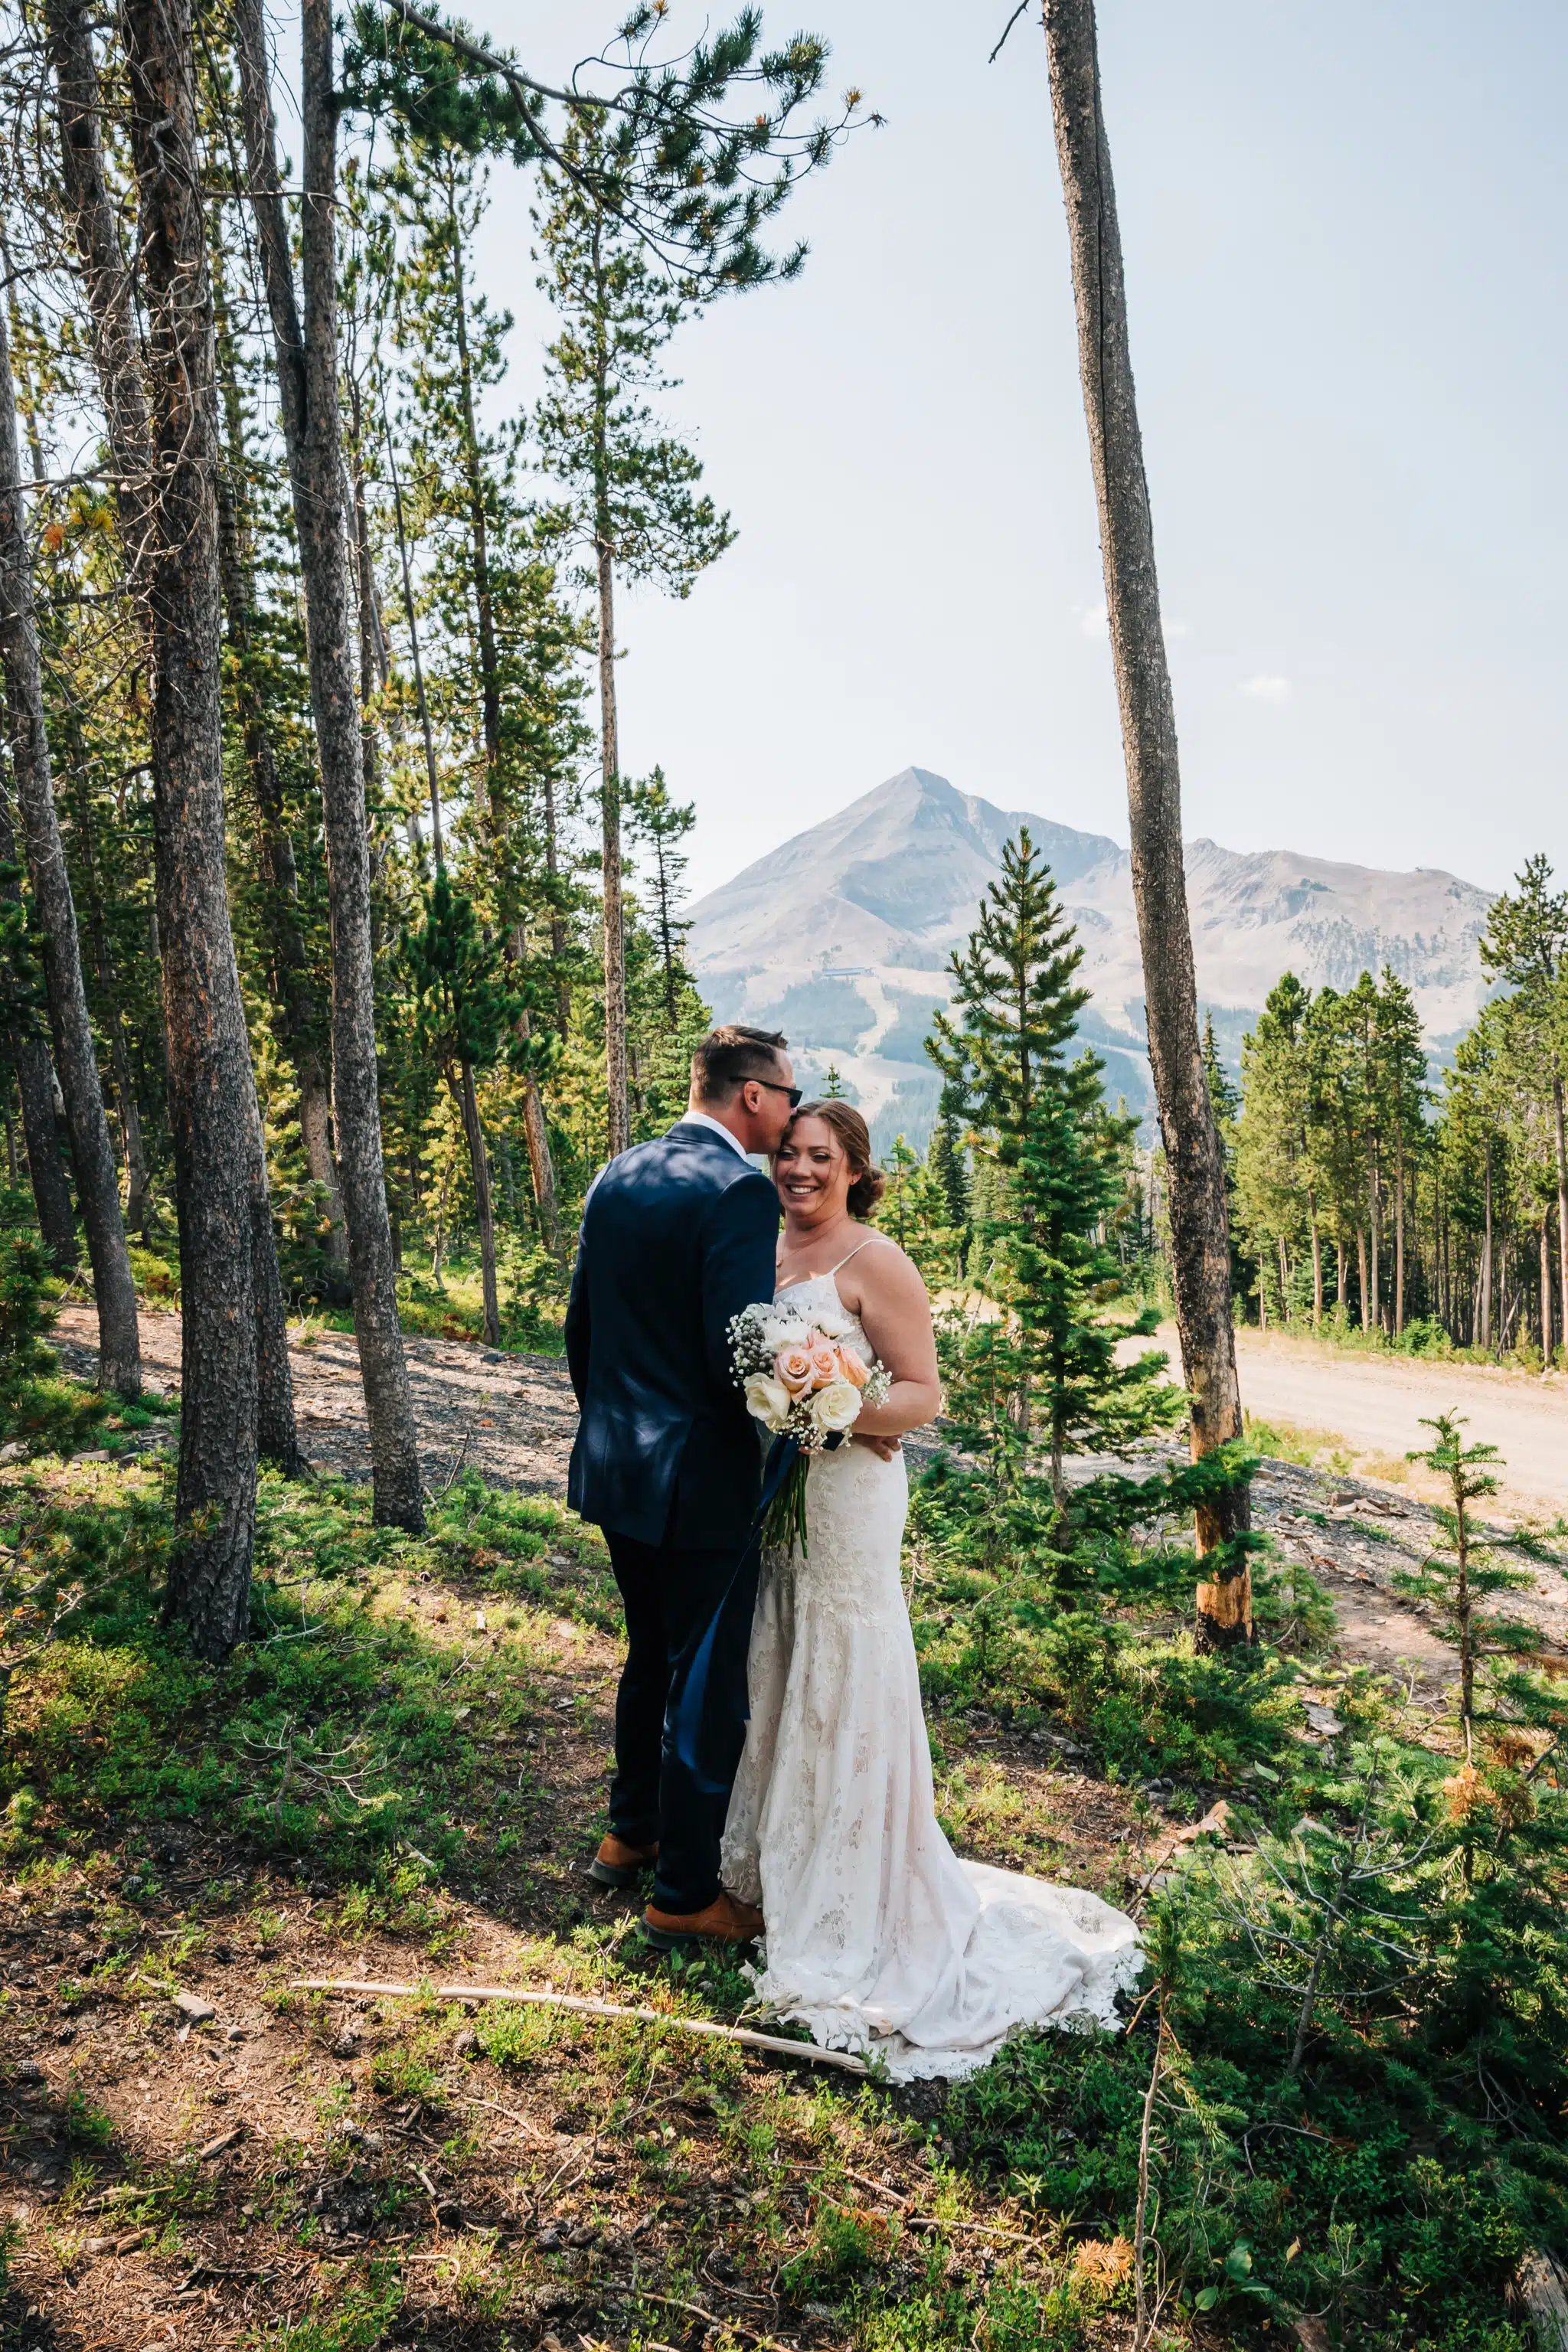 Couple Infront Of Lone Peak Big Sky Resort Wedding Venue In Montana